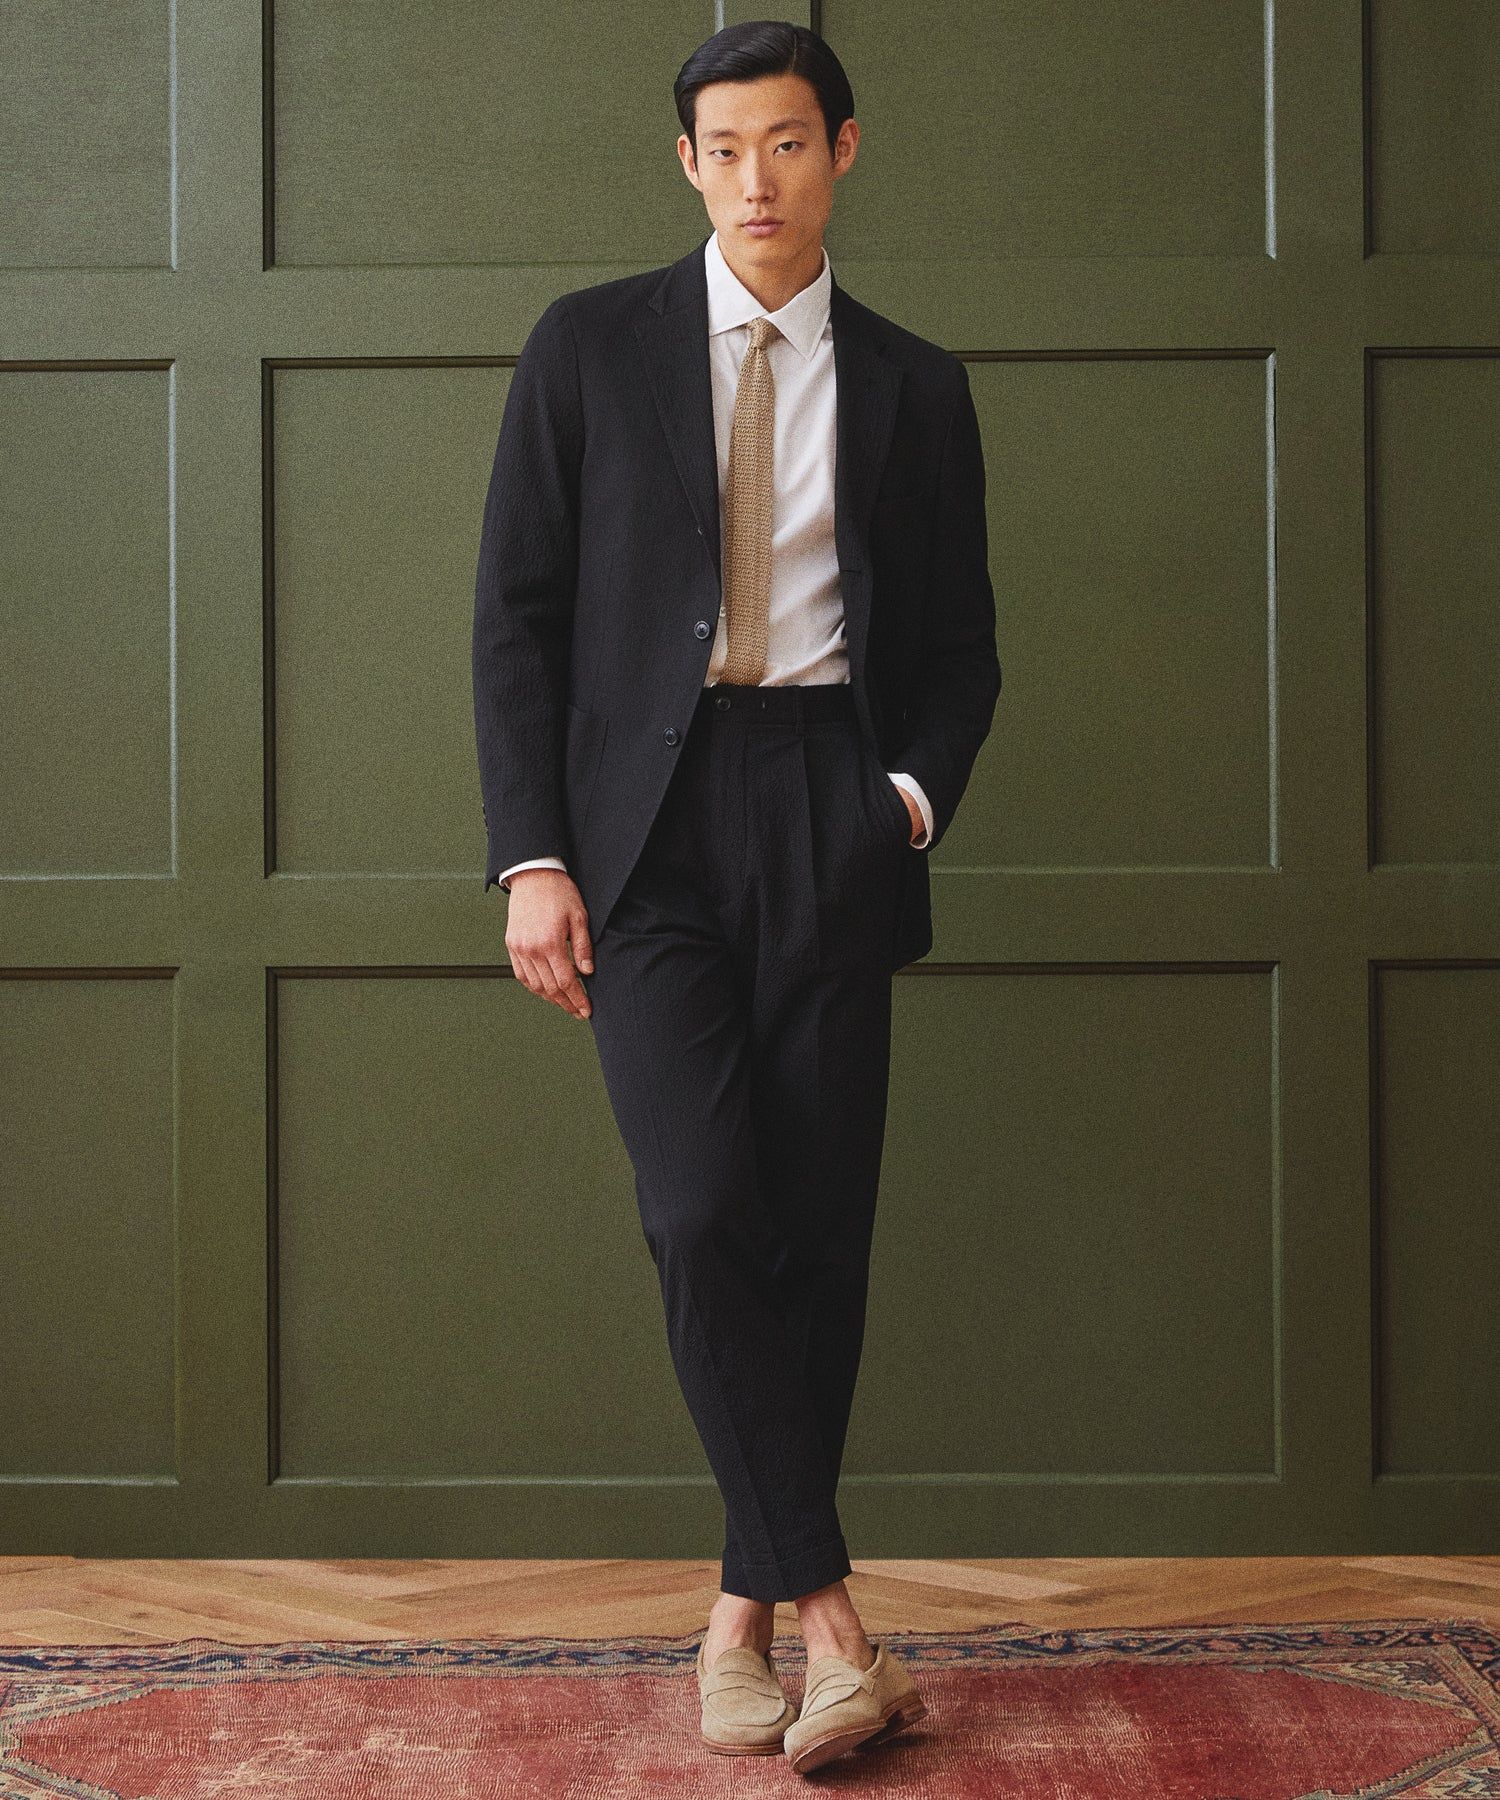 Black suit pants | Tailor Store®